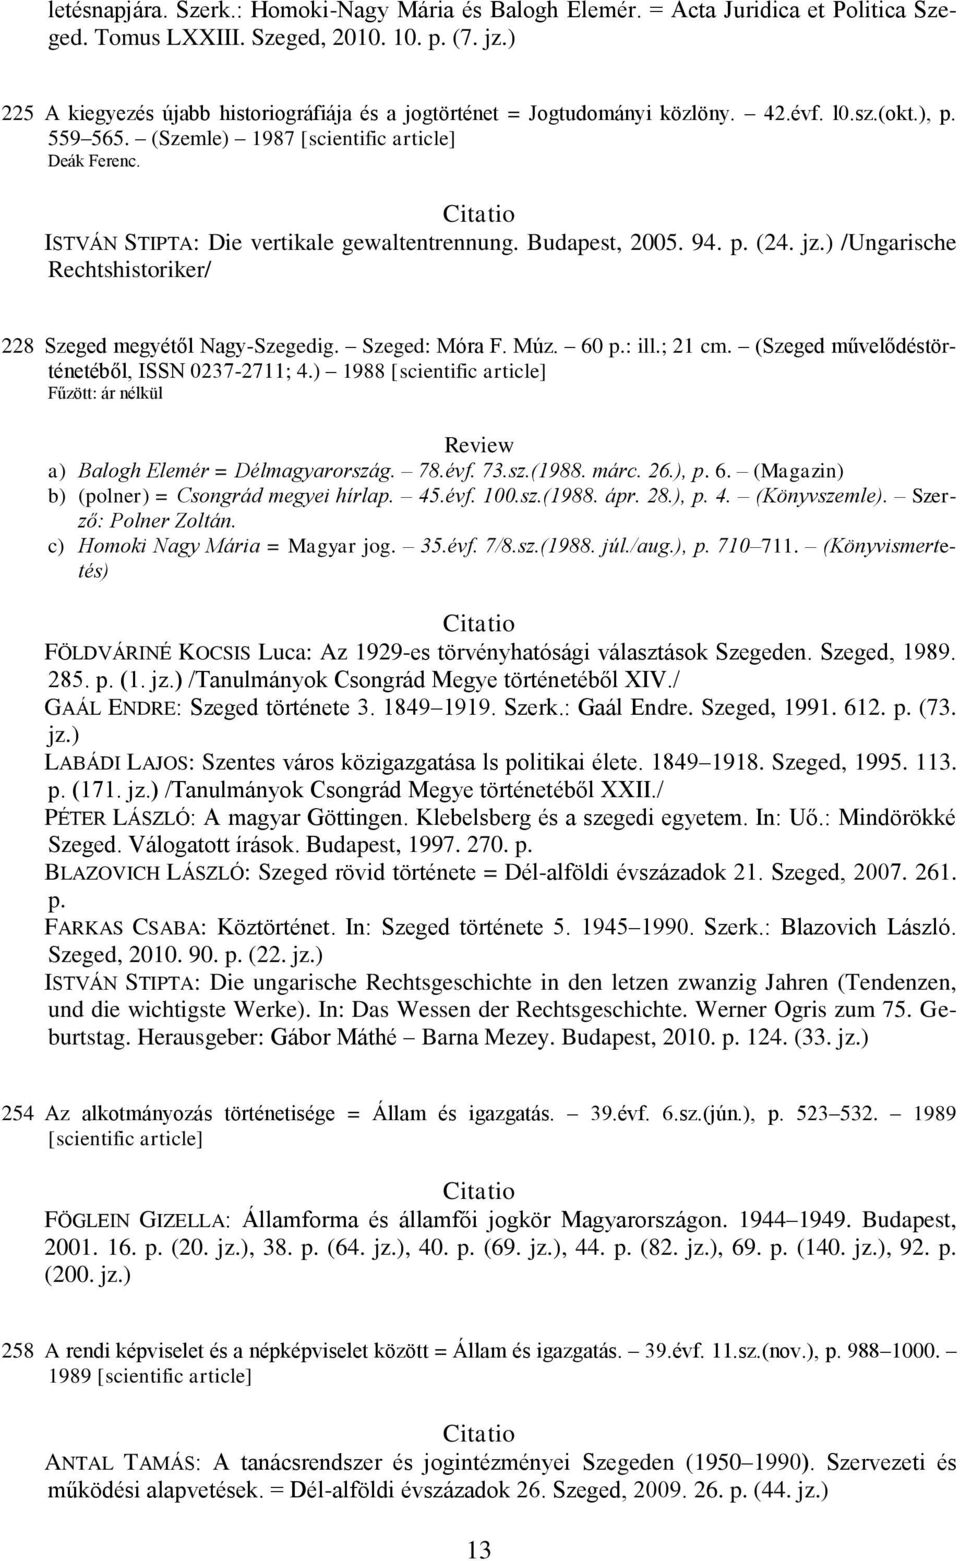 Szeged: Móra F. Múz. 60 p.: ill.; 21 cm. (Szeged művelődéstörténetéből, ISSN 0237-2711; 4.) 1988 [scientific article] Fűzött: ár nélkül a) Balogh Elemér = Délmagyarország. 78.évf. 73.sz.(1988. márc.